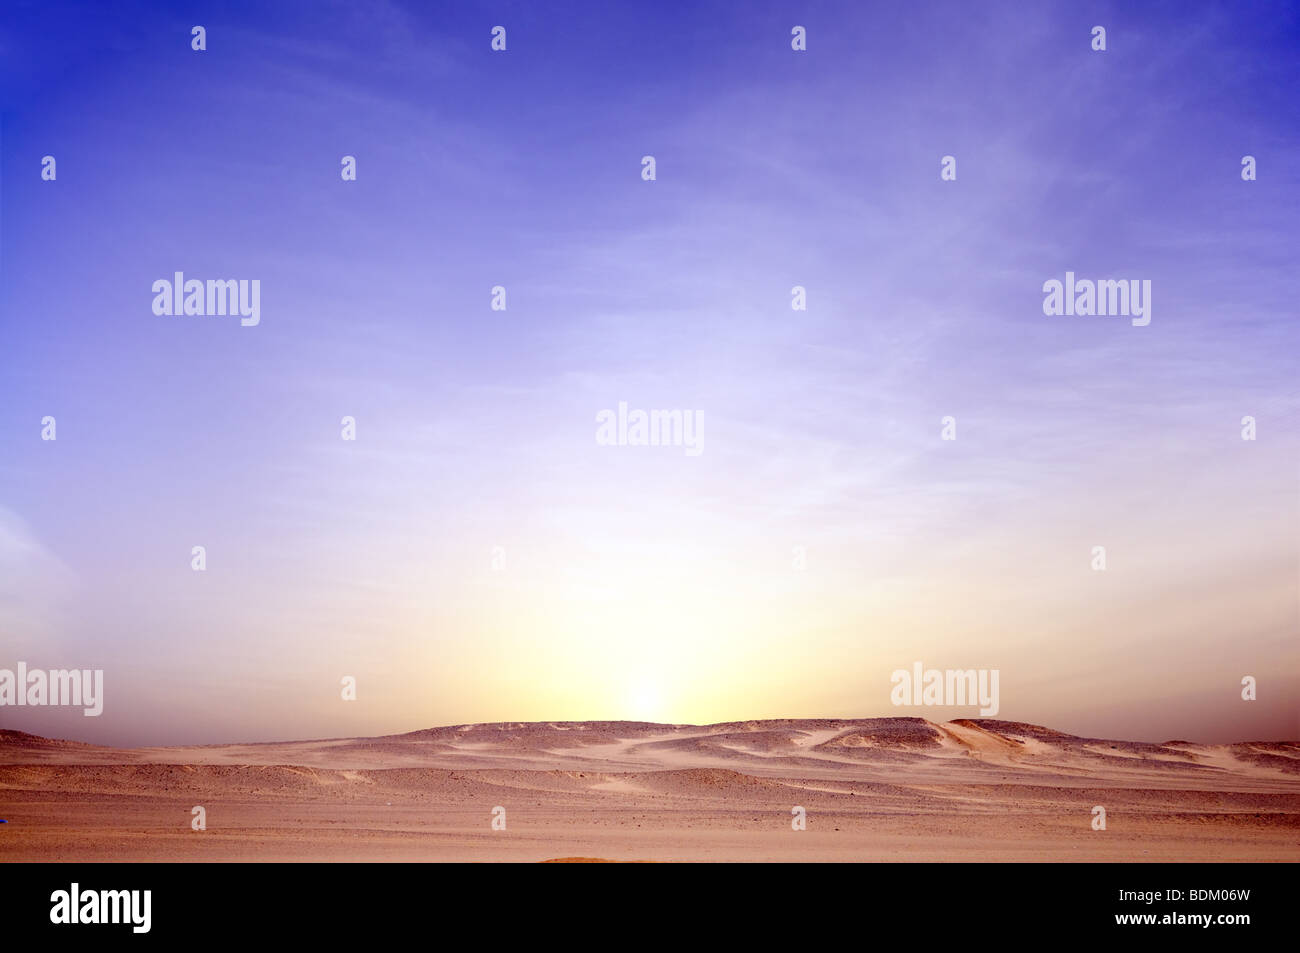 sunrise in desert landscape background Stock Photo